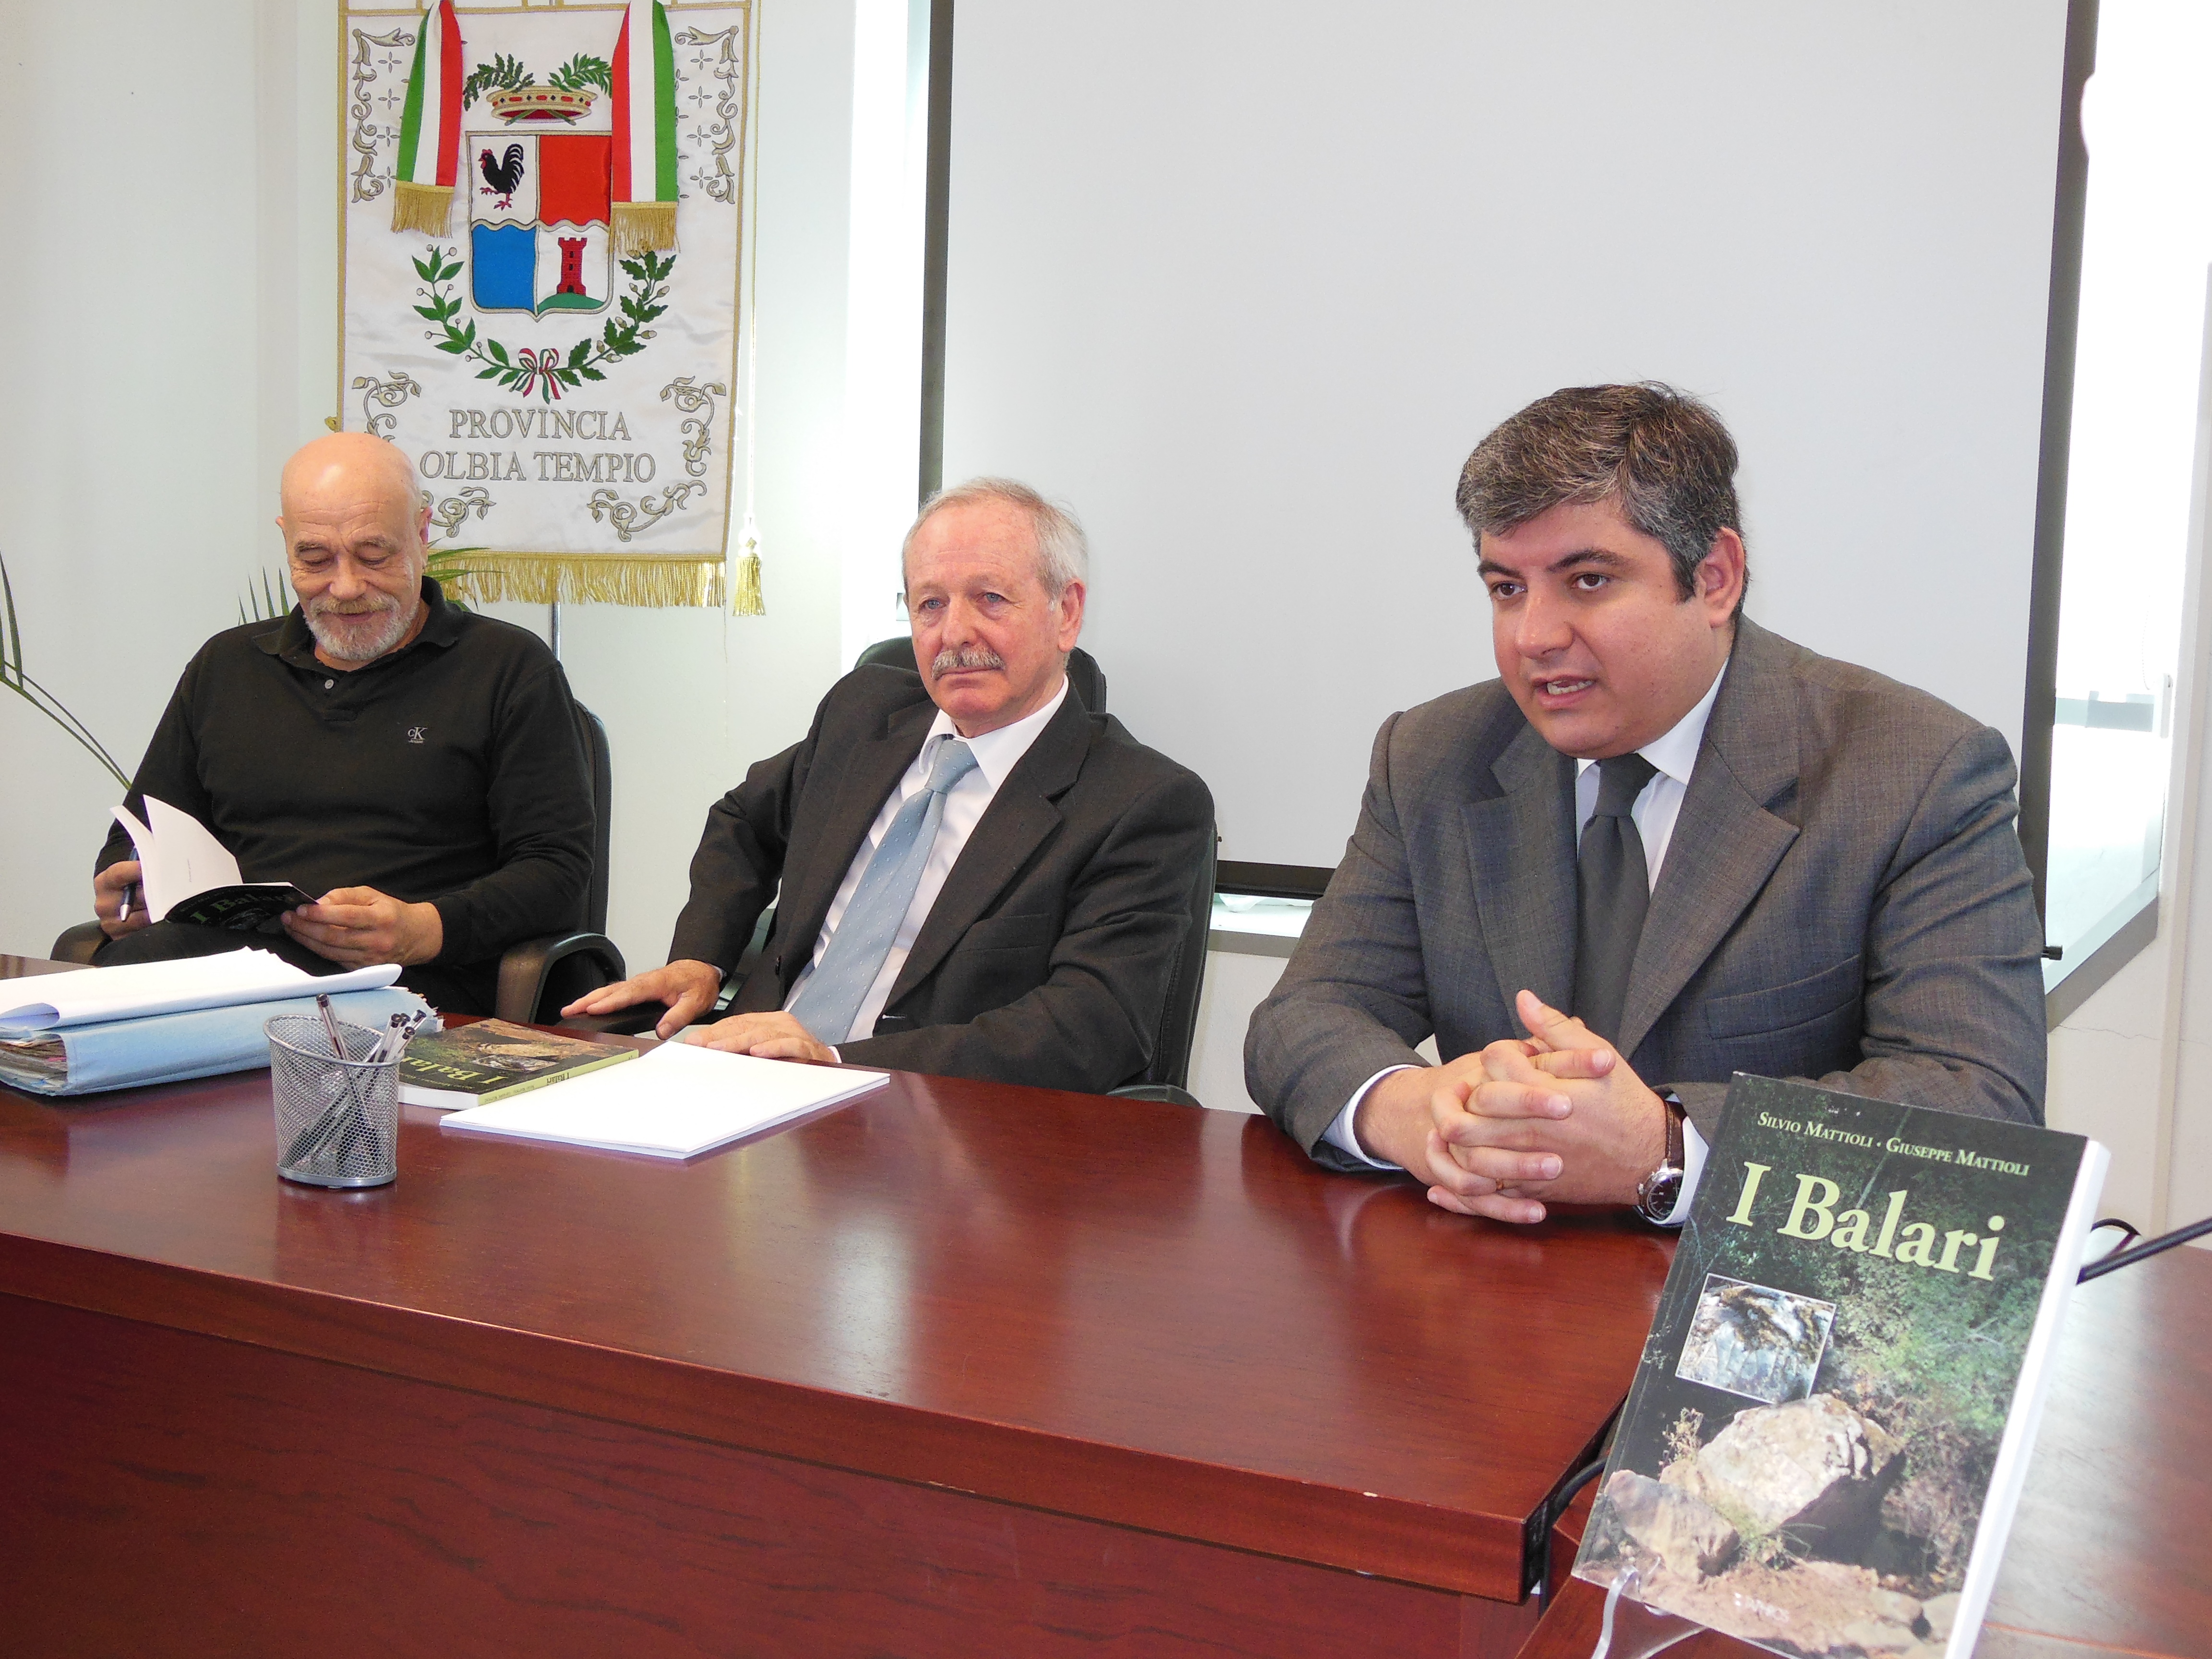 Presentato in Provincia il libro di dedicato ai “Balari” di Giuseppe Mattioli